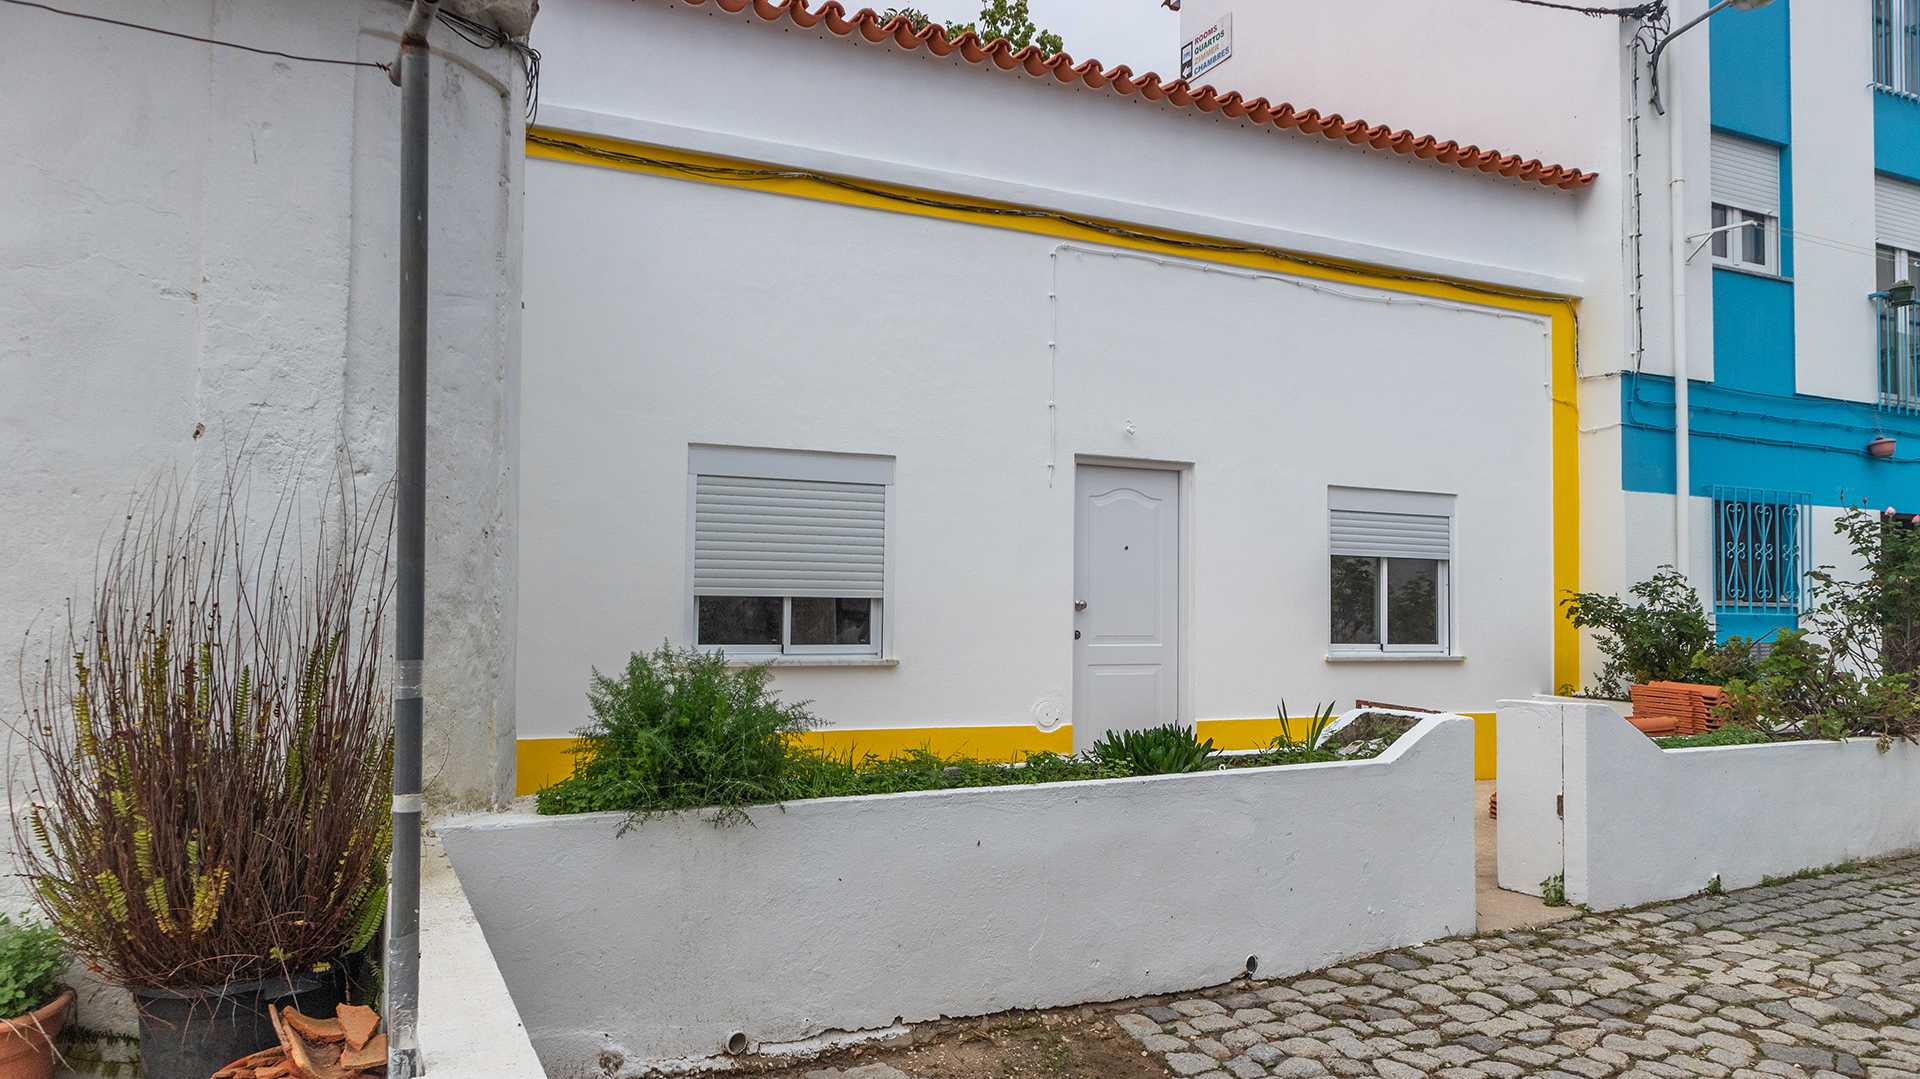 Casa geminada de 2 quartos parcialmente renovada perto do centro de Monchique | LG2018 